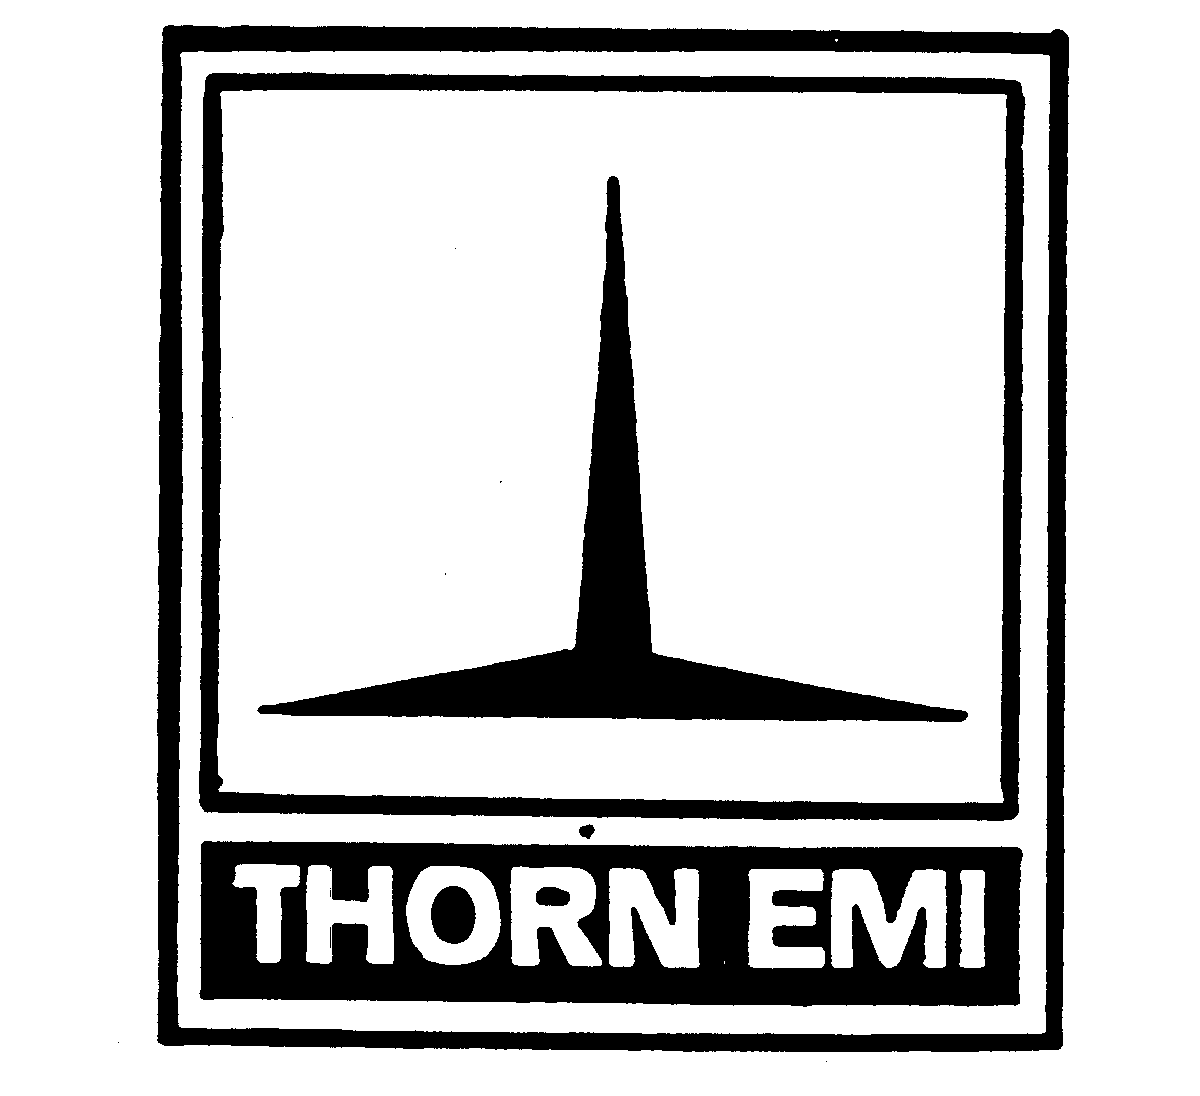  THORN EMI